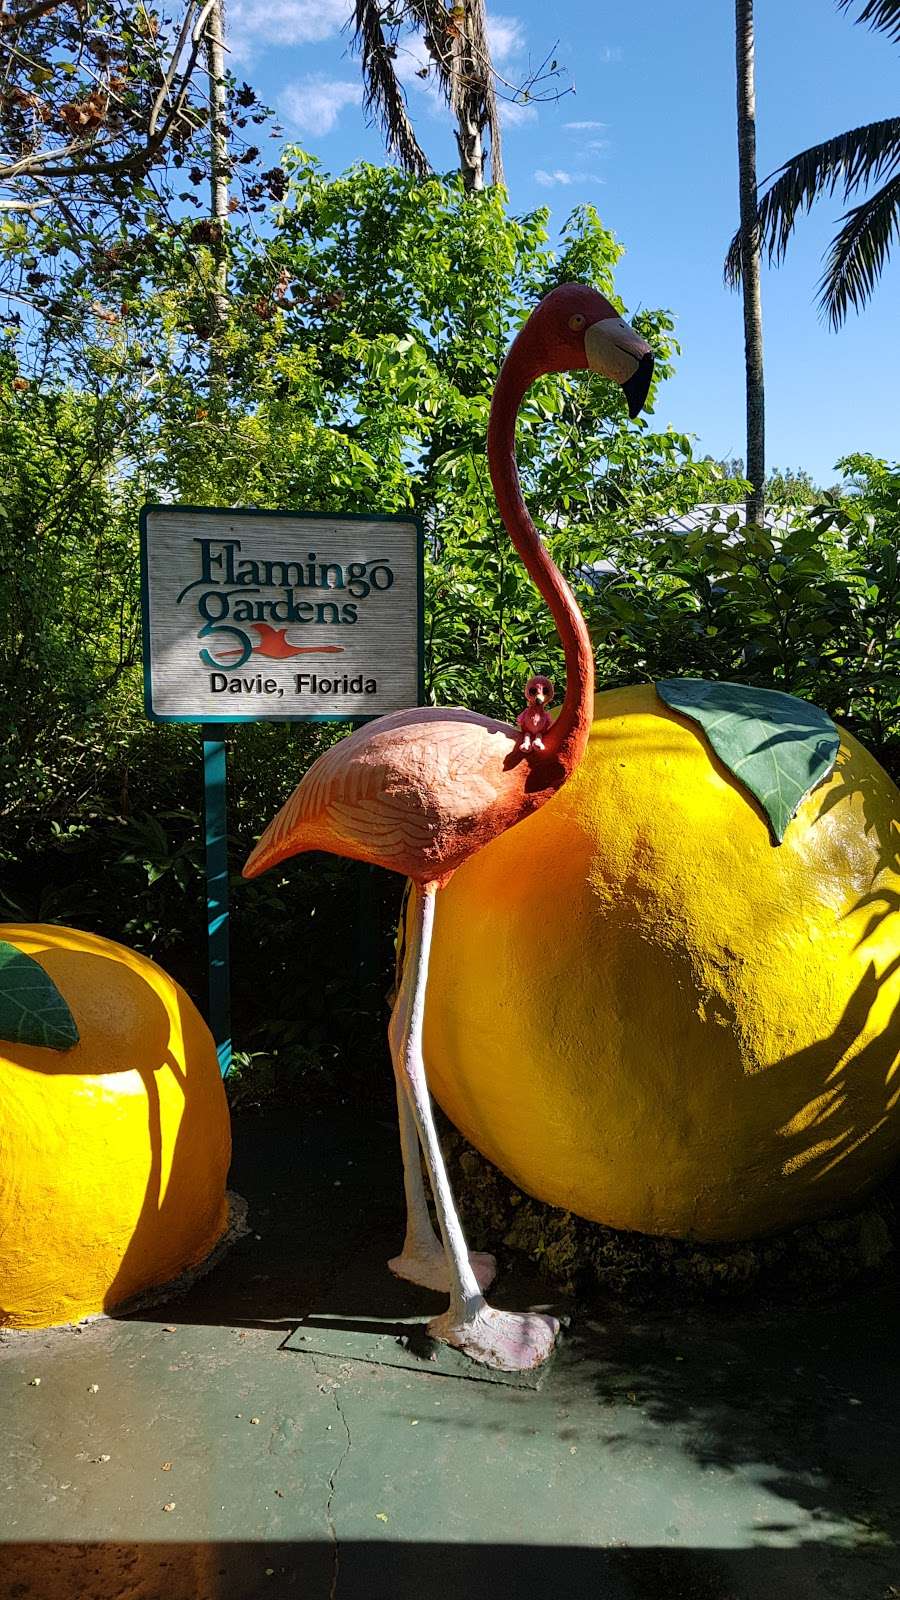 Flamingo Gardens | 3750 S Flamingo Rd, Davie, FL 33330 | Phone: (954) 473-2955